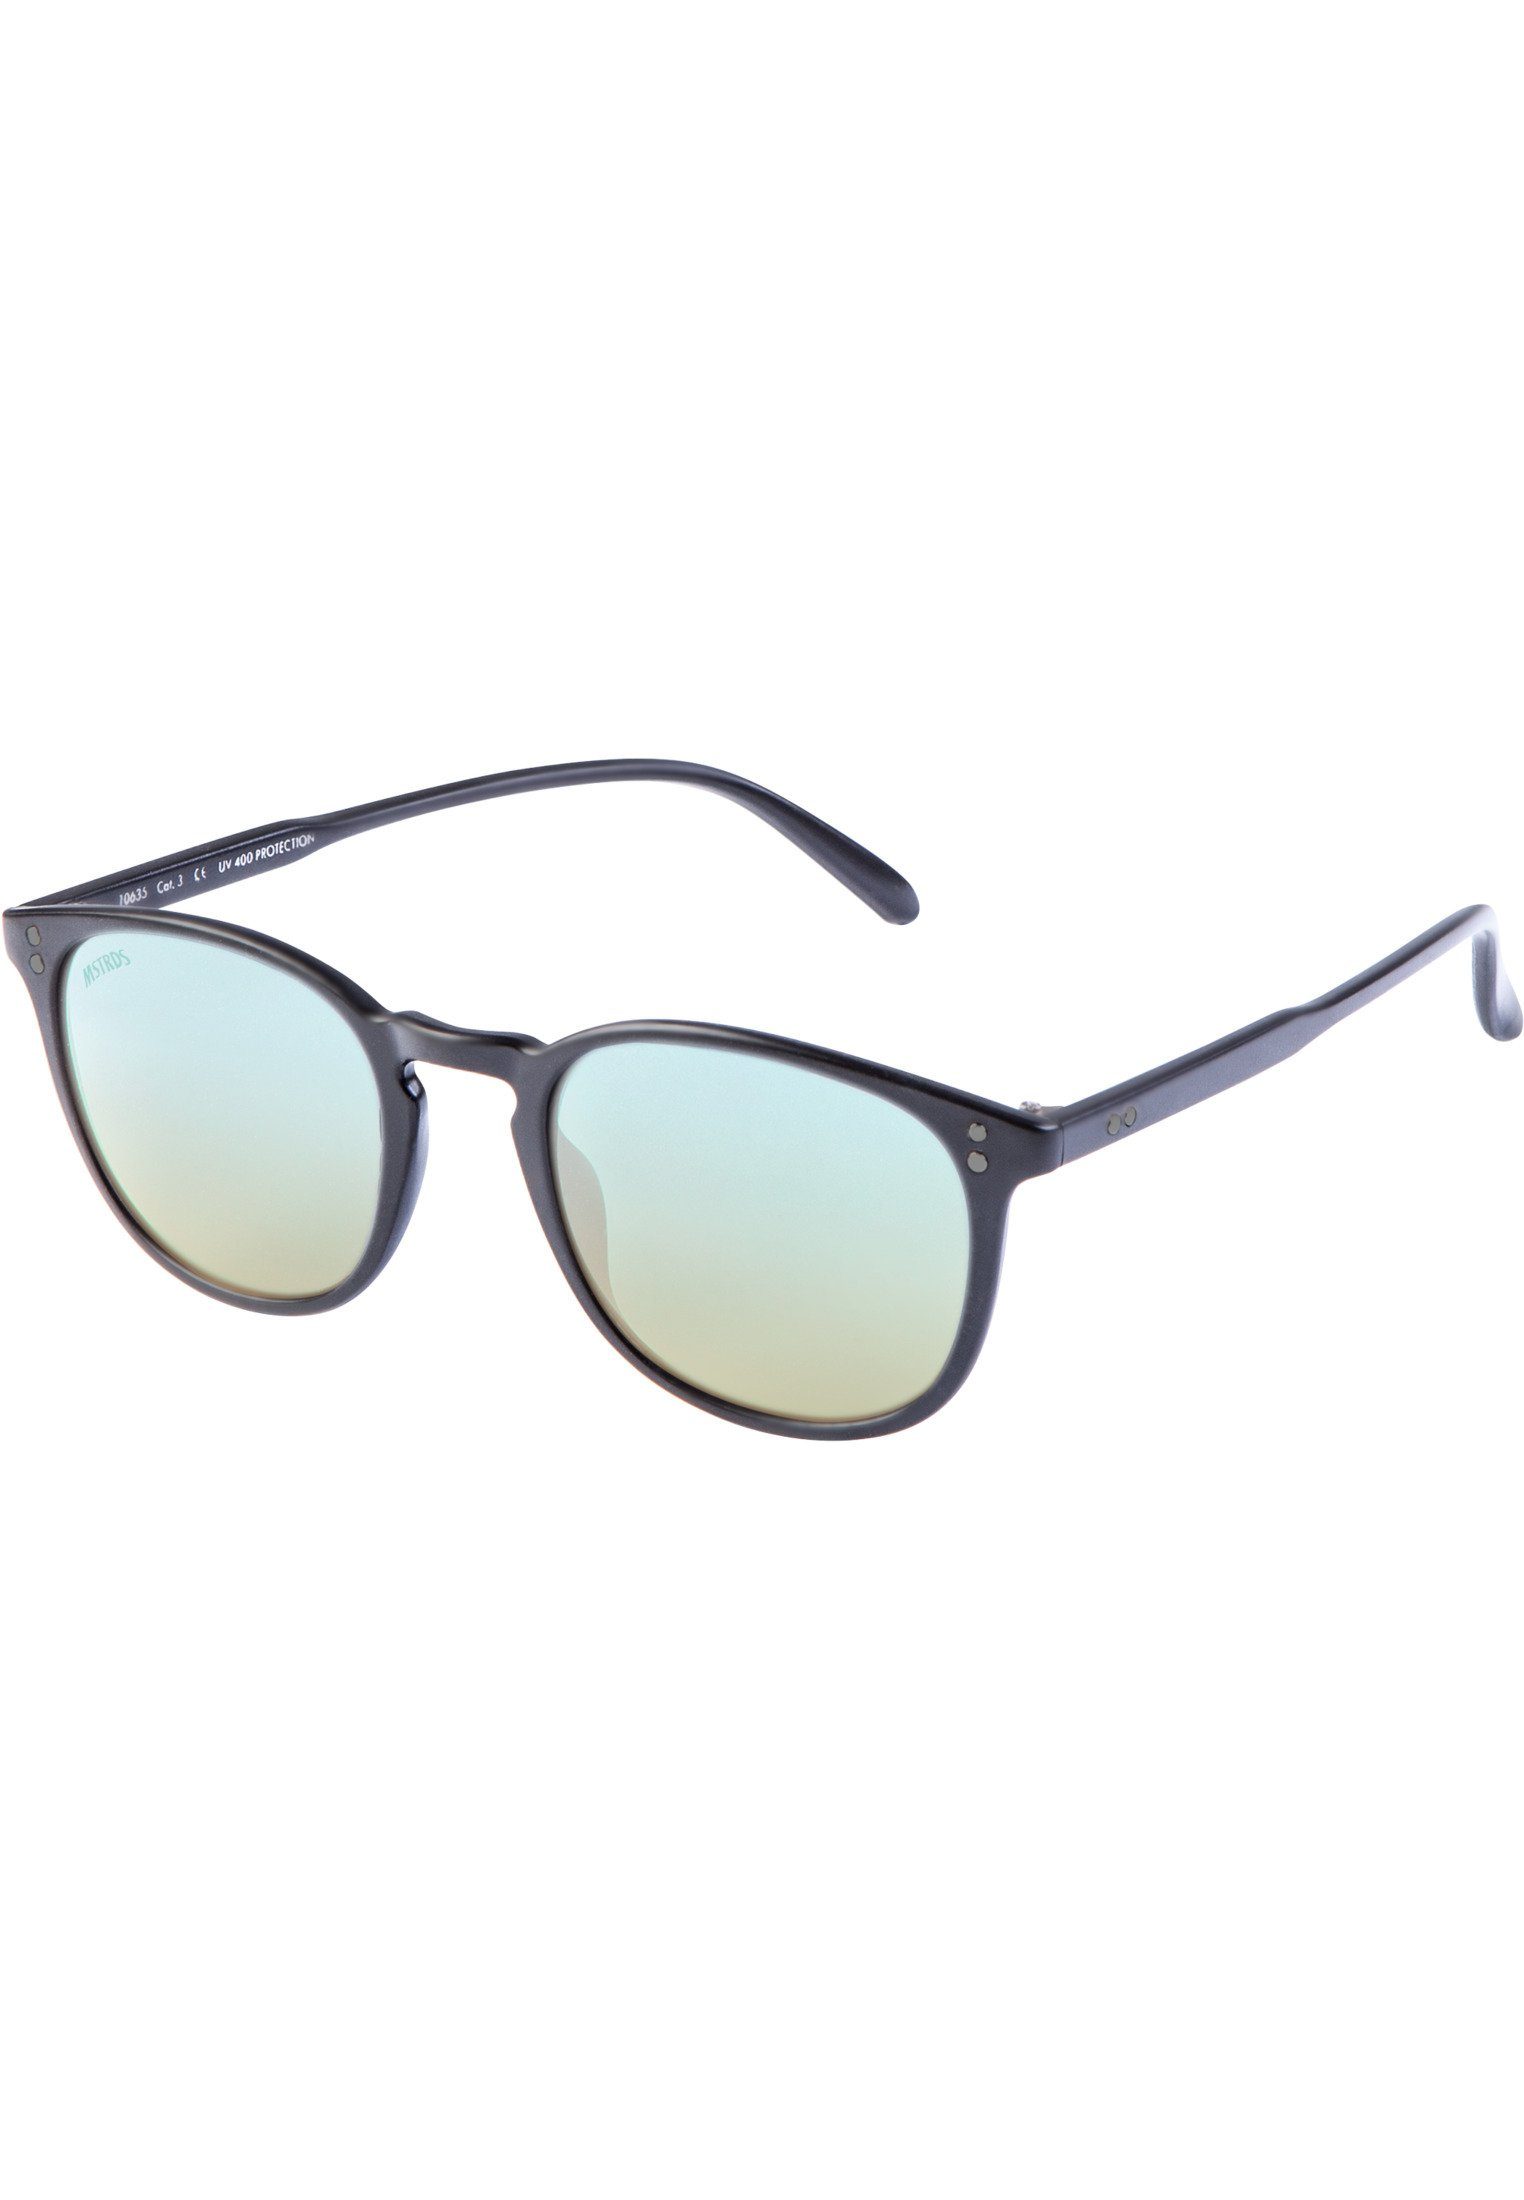 Sonnenbrille Arthur blk/blue MSTRDS Accessoires Sunglasses Youth